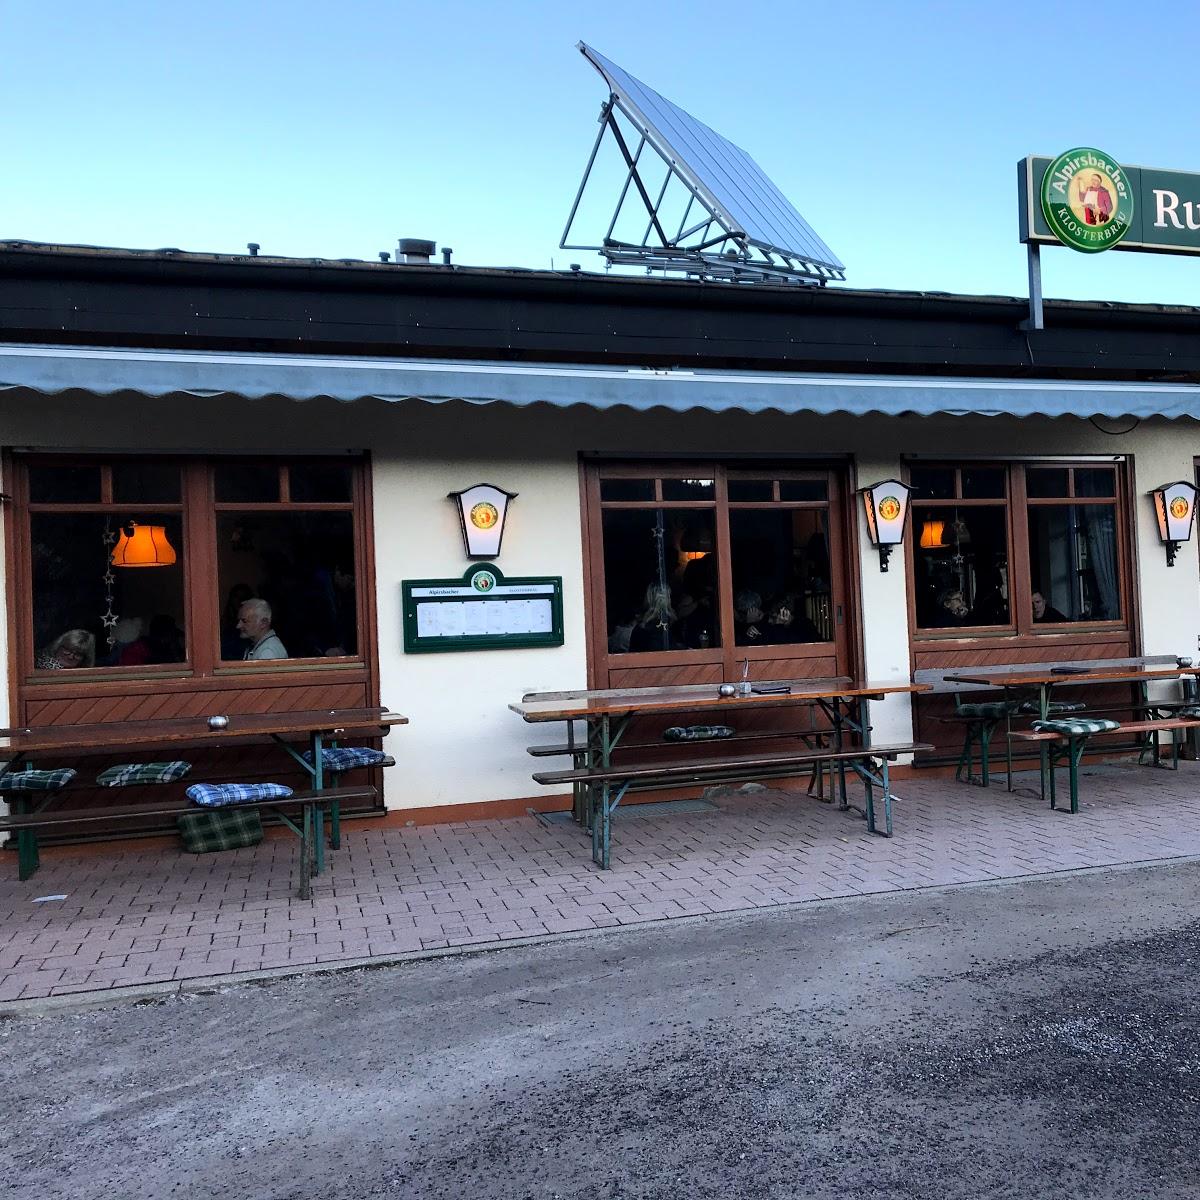 Restaurant "Ruhestein Schänke" in  Baiersbronn